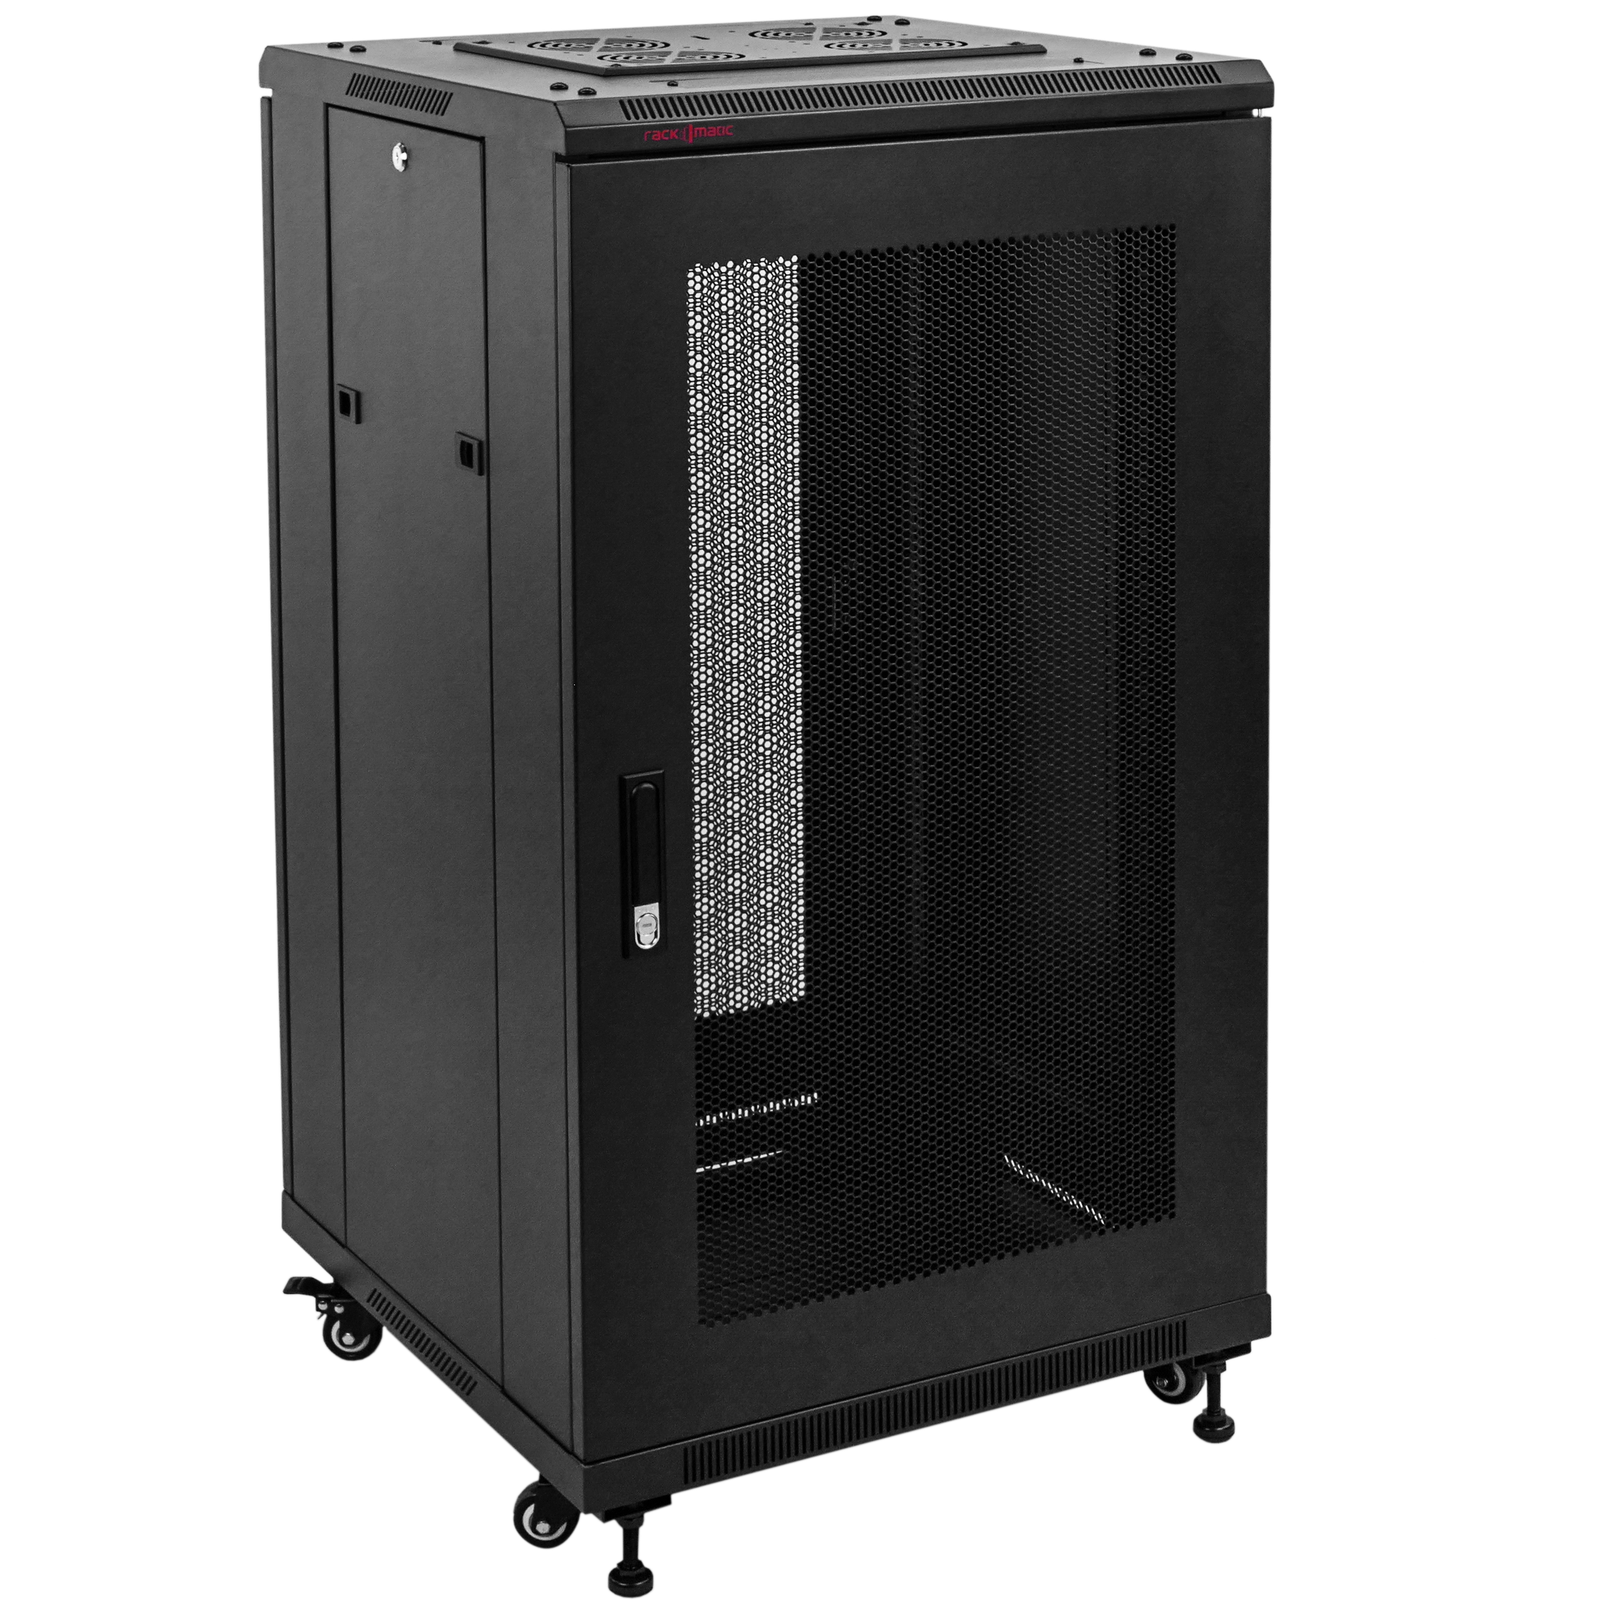 Server rack cabinet 19 inch 29U 600x800x1400mm floor standing